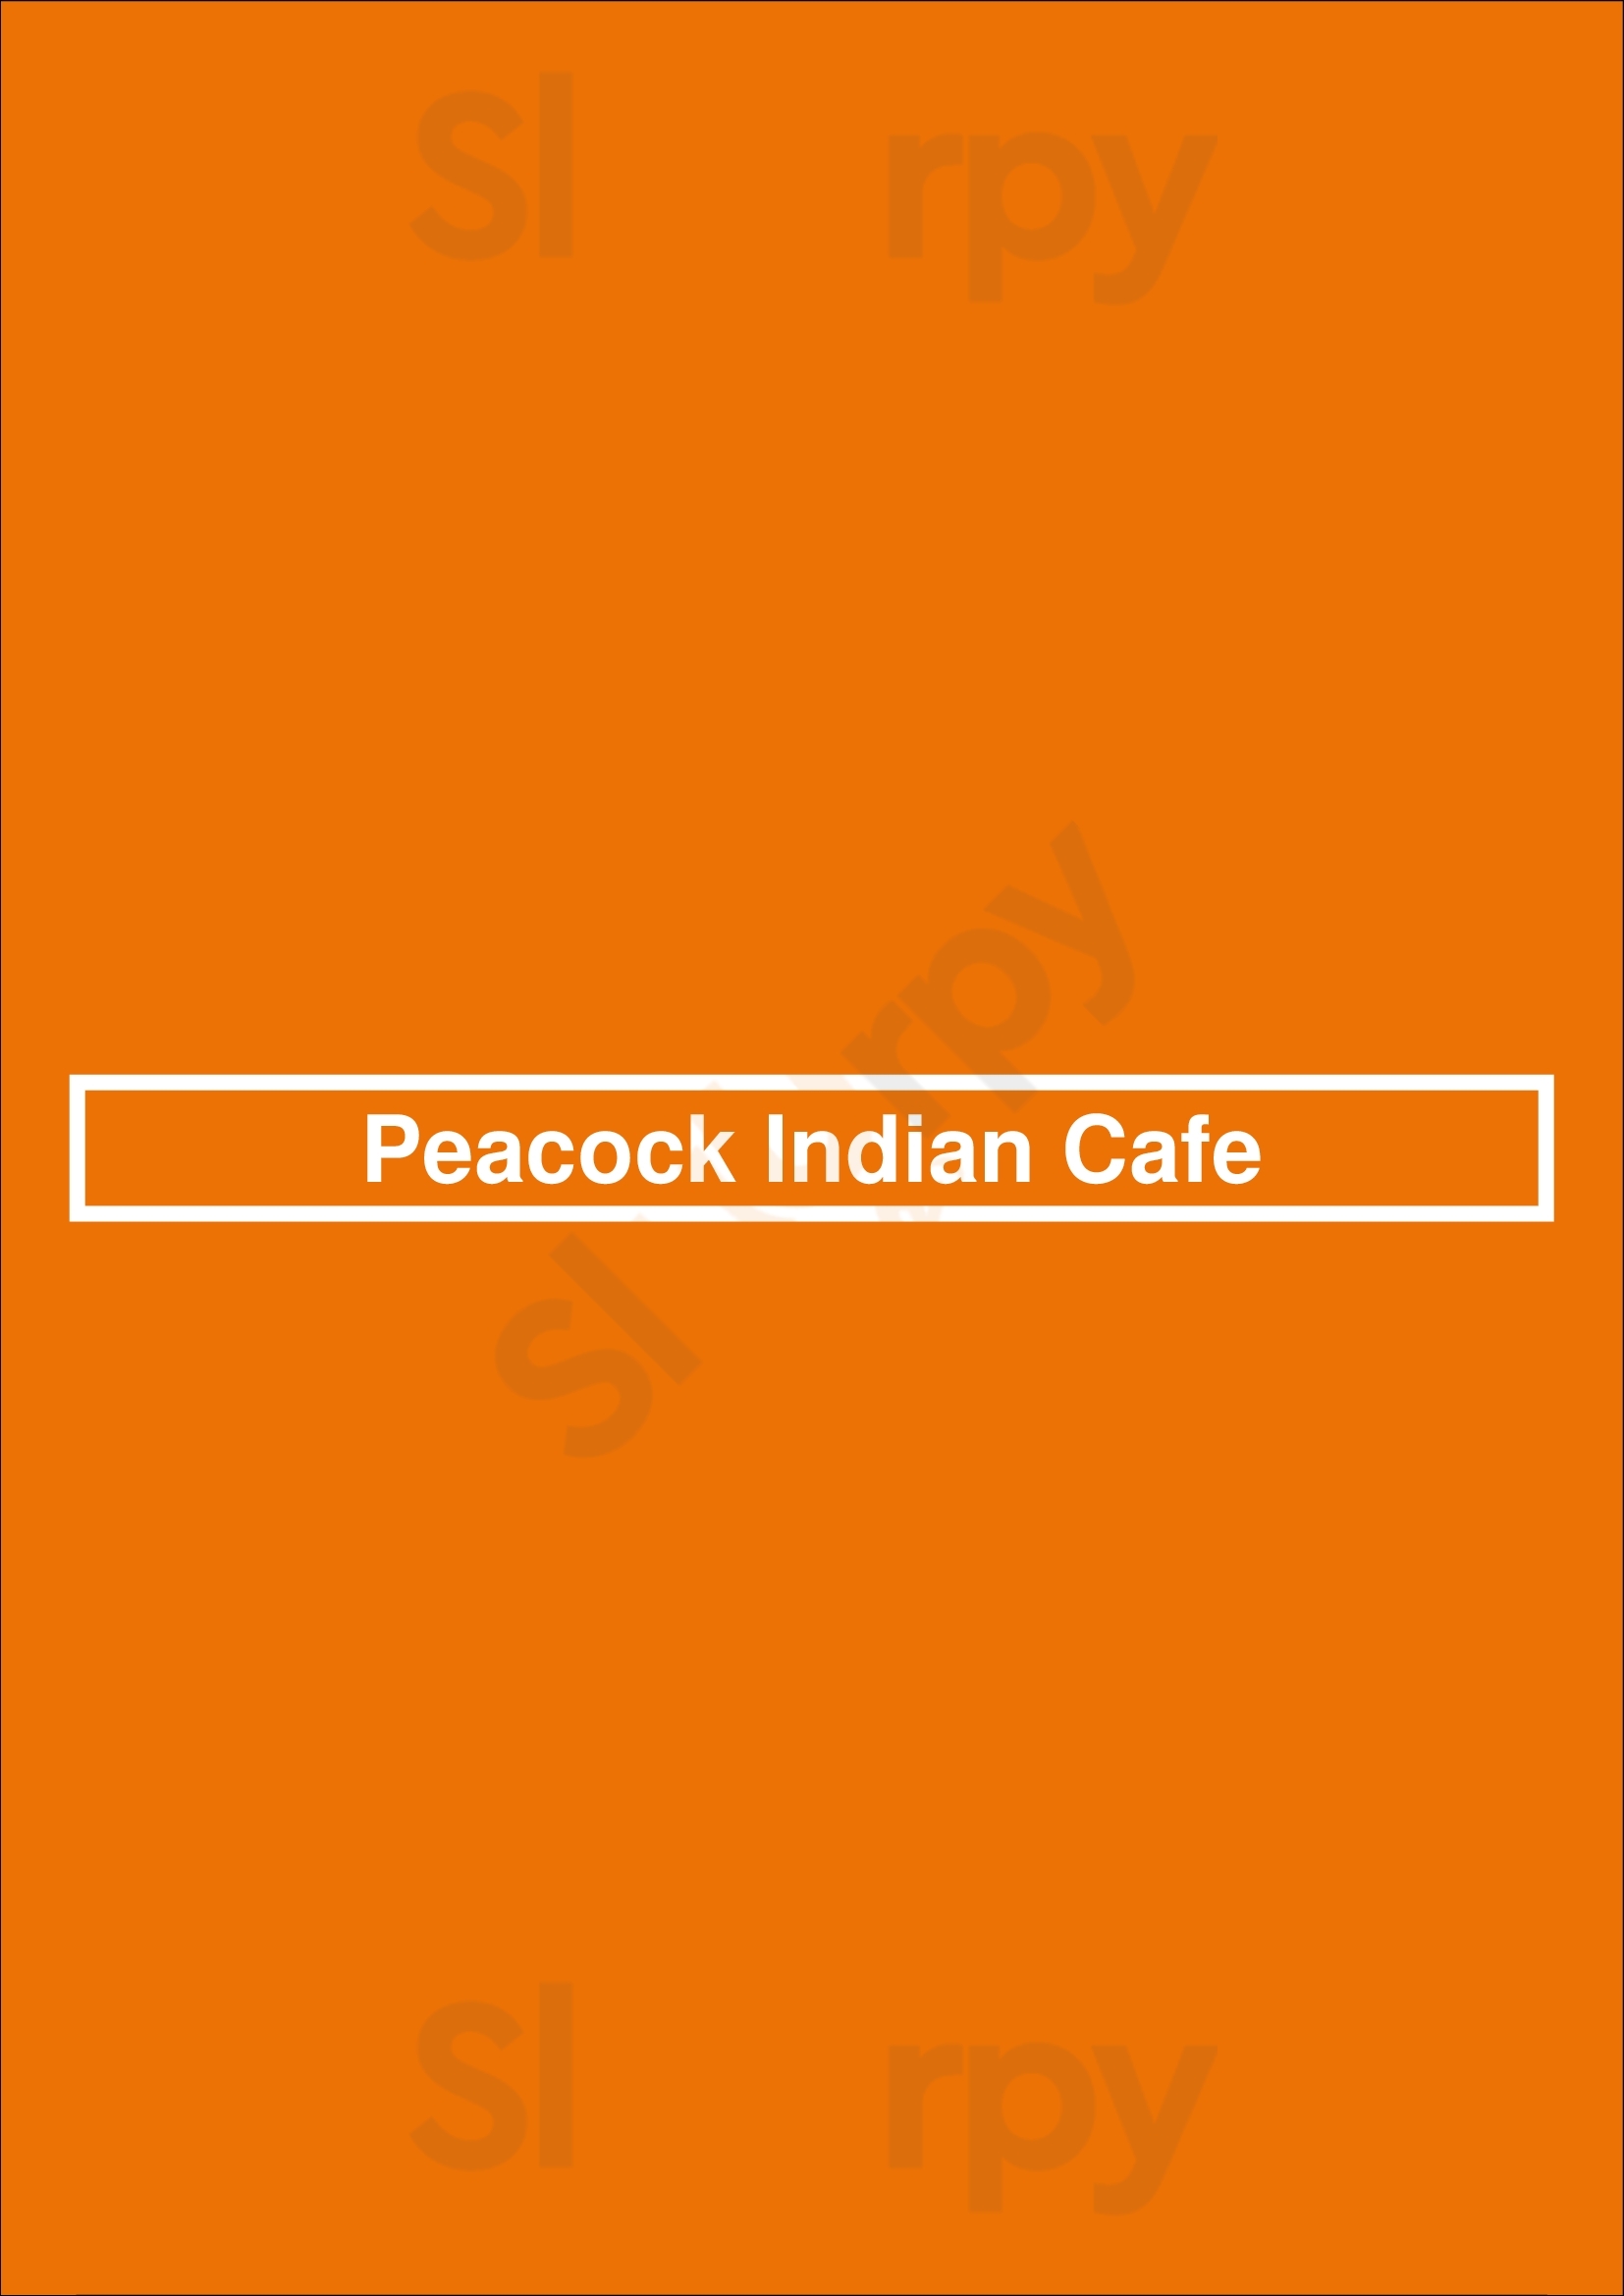 Peacock Indian Cafe San Jose Menu - 1